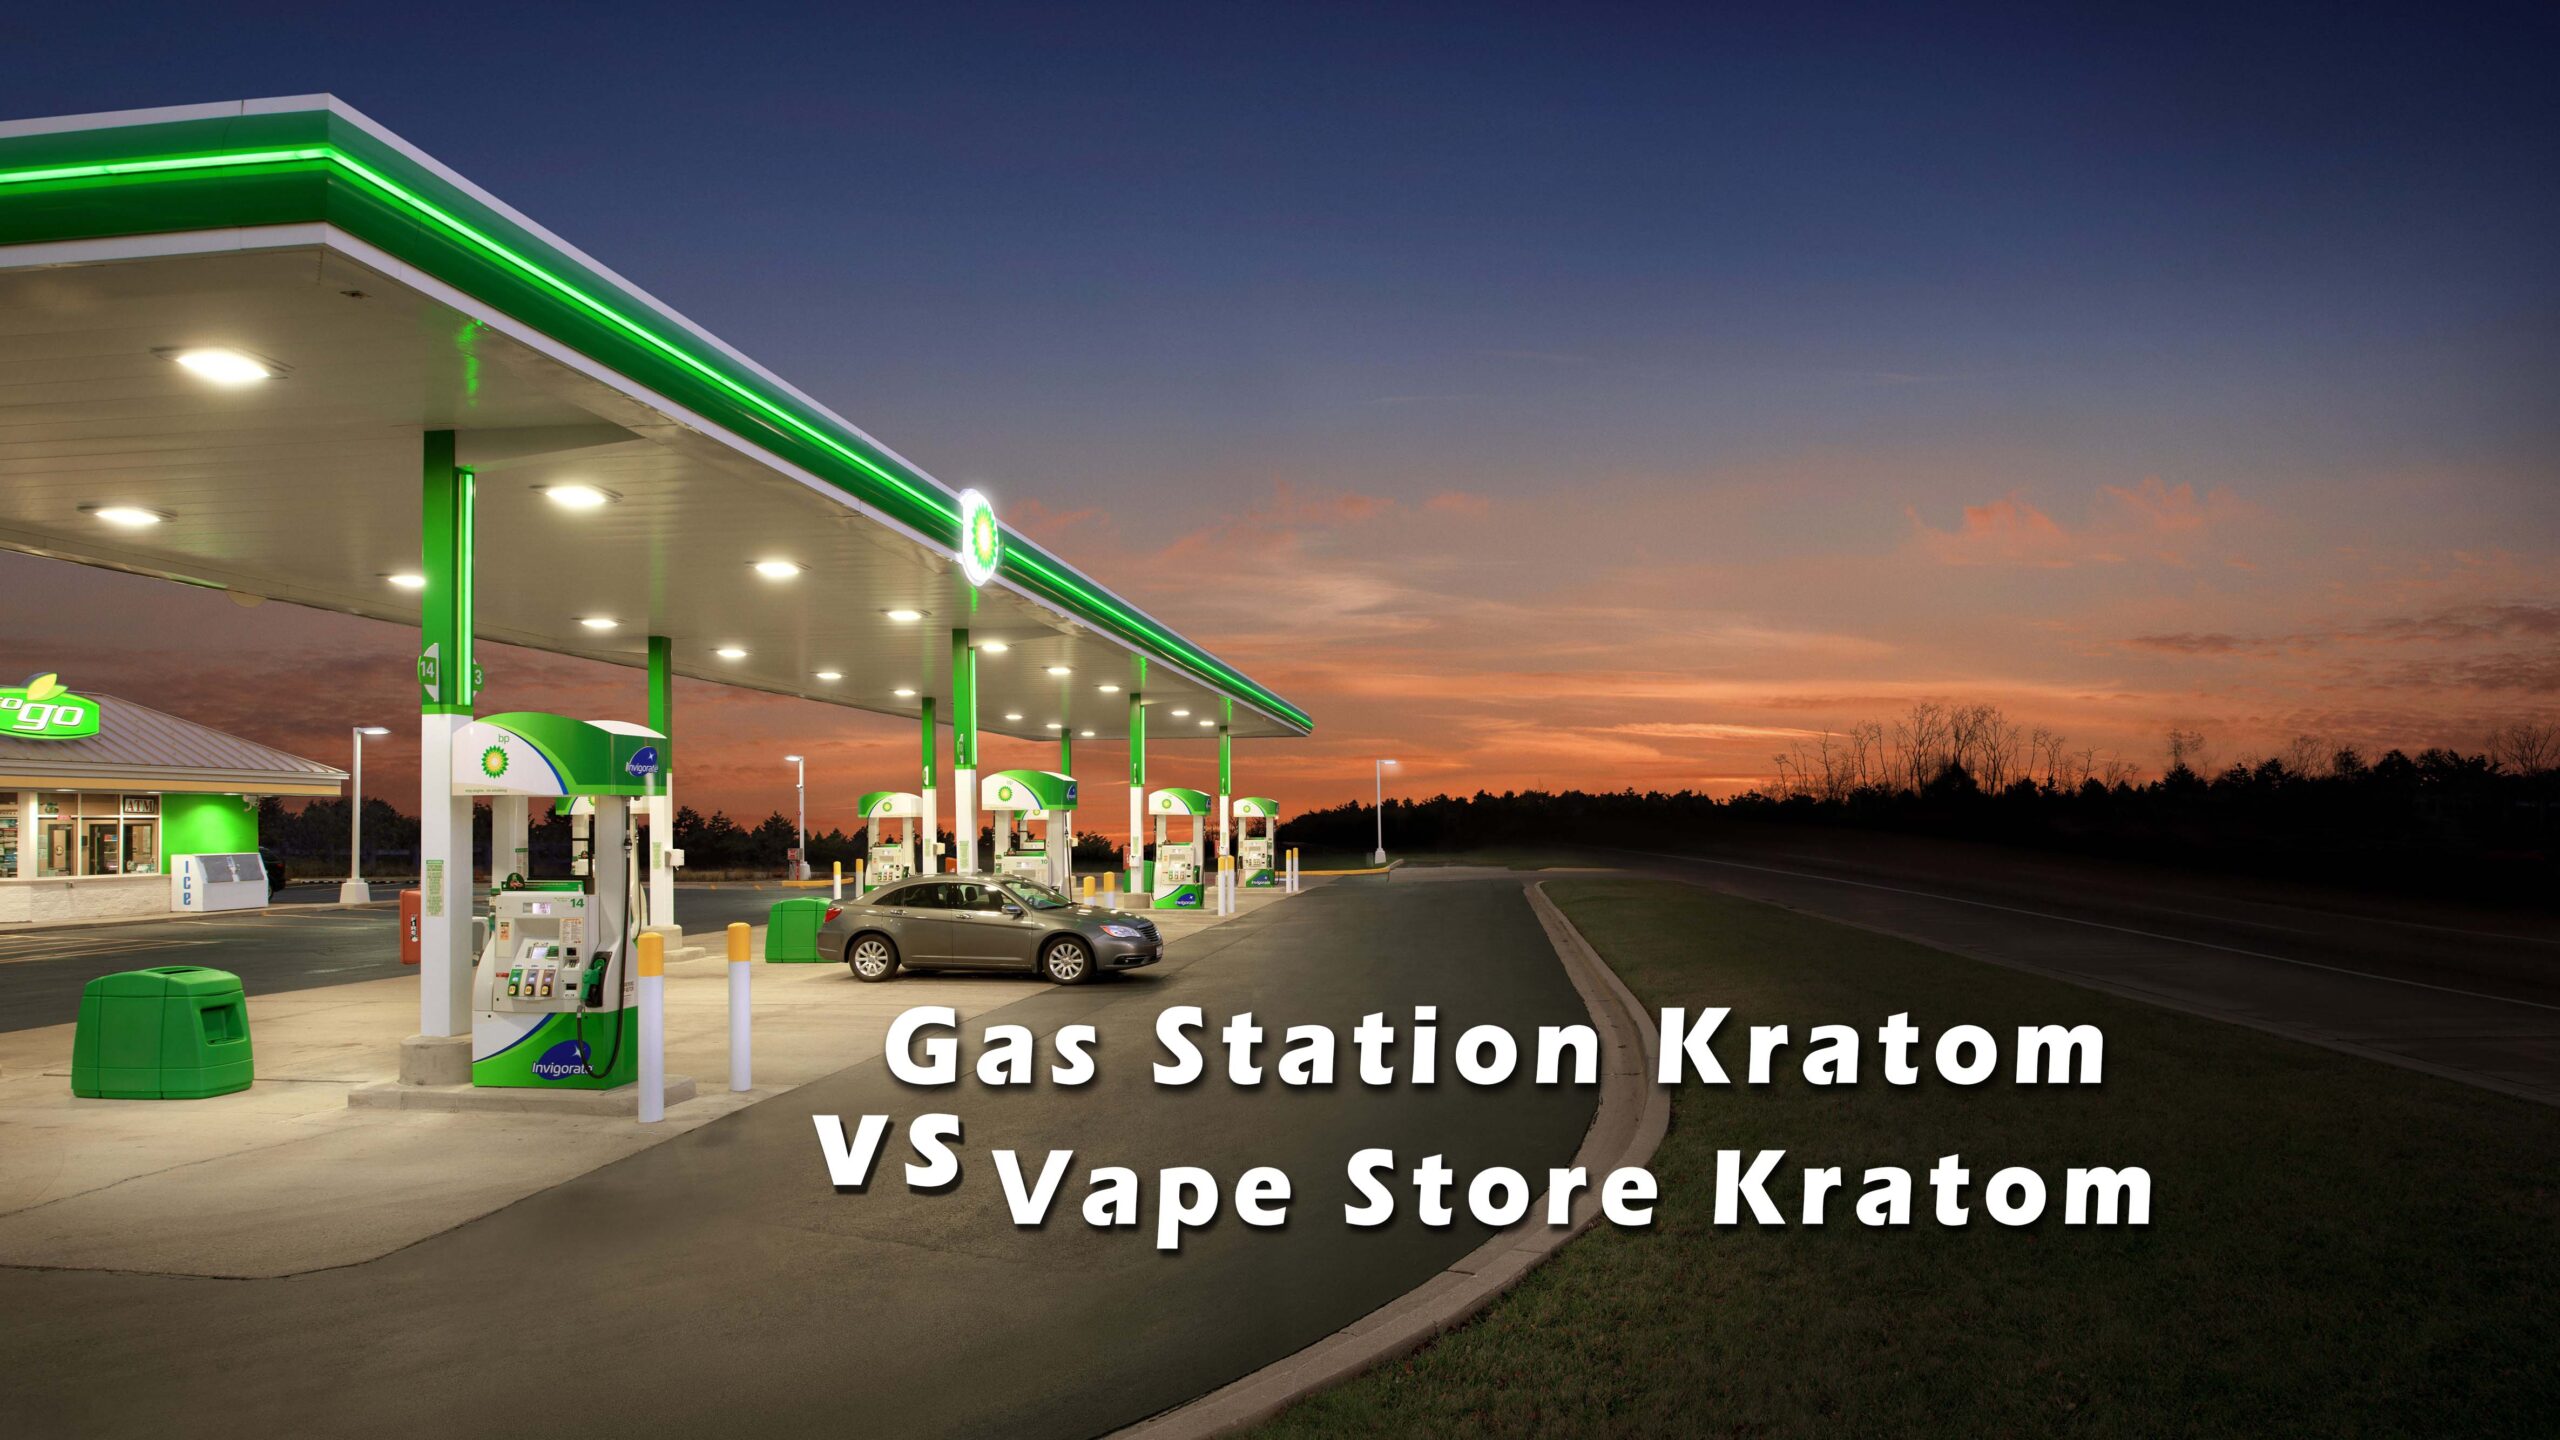 Gas Station Kratom vs. Vape Store Kratom: Which Is Better?